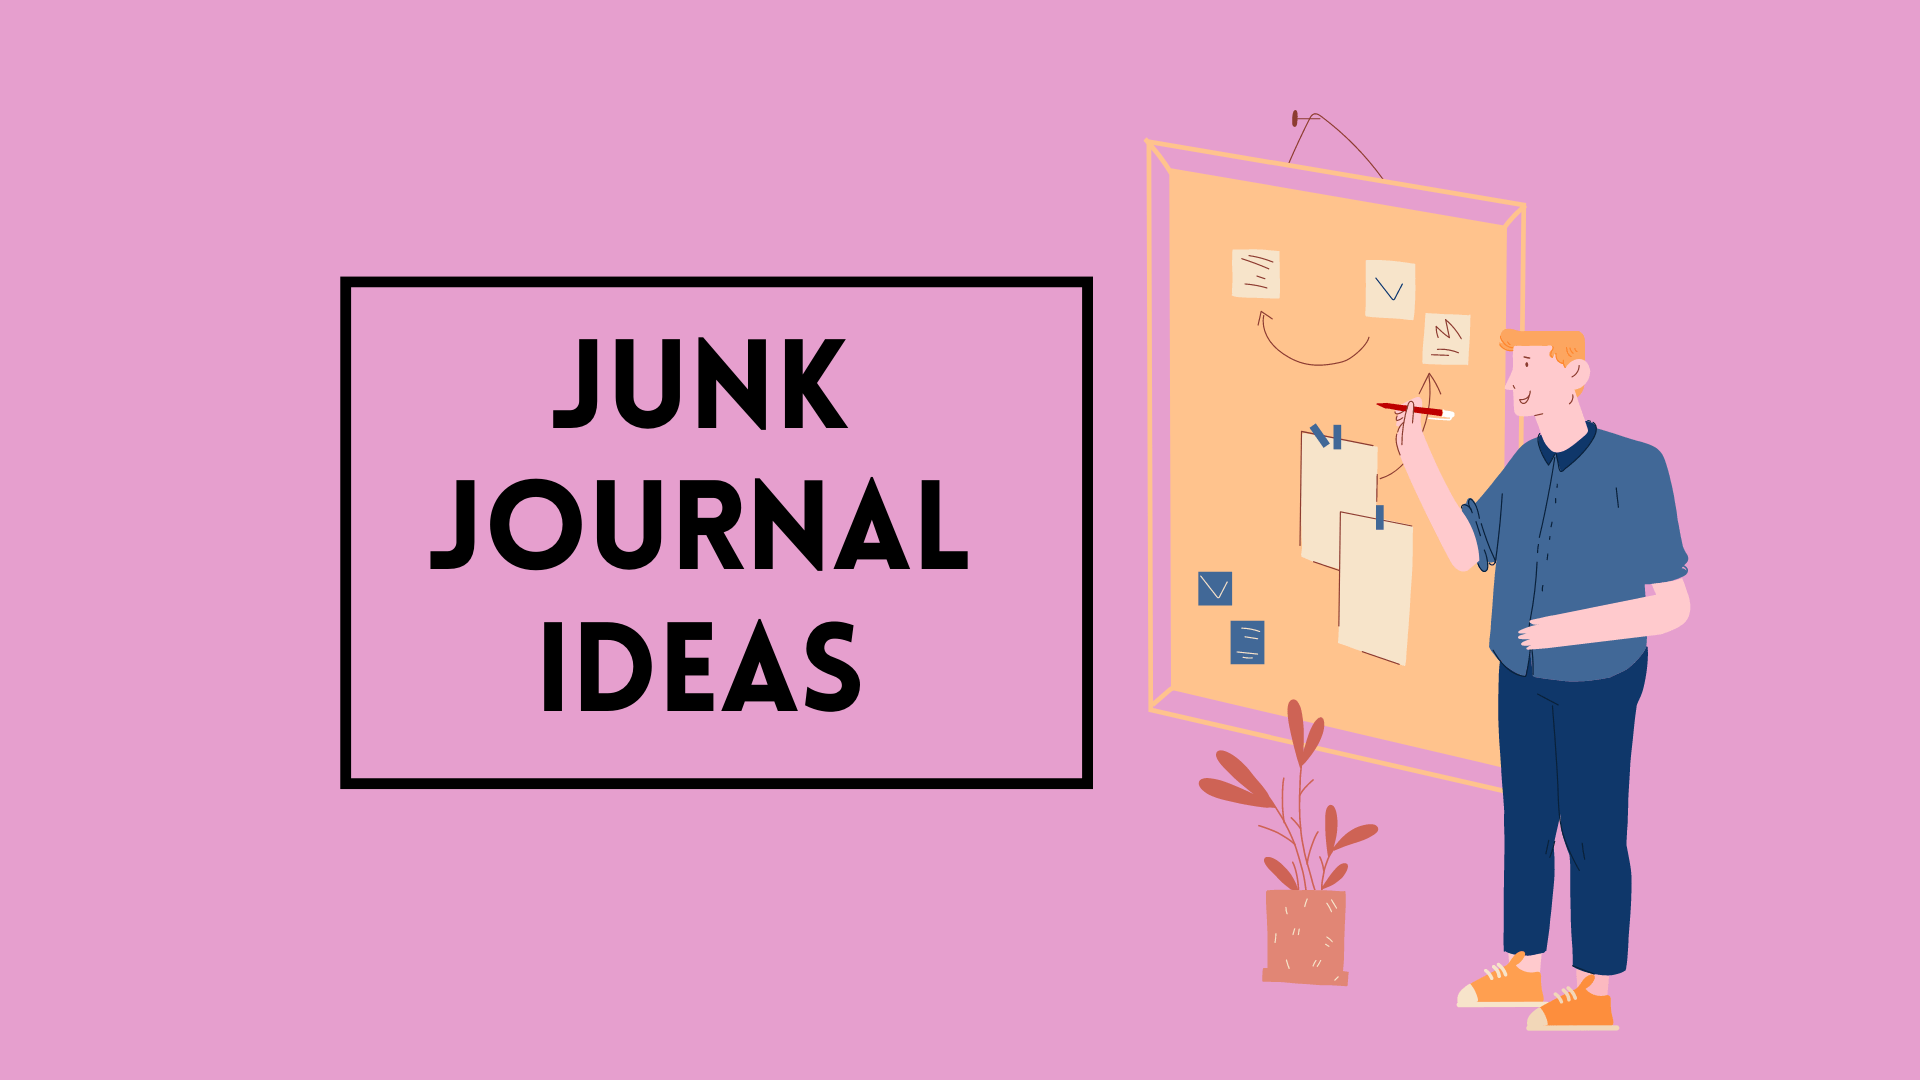 Junk Journal Notebook - Grandma Ideas